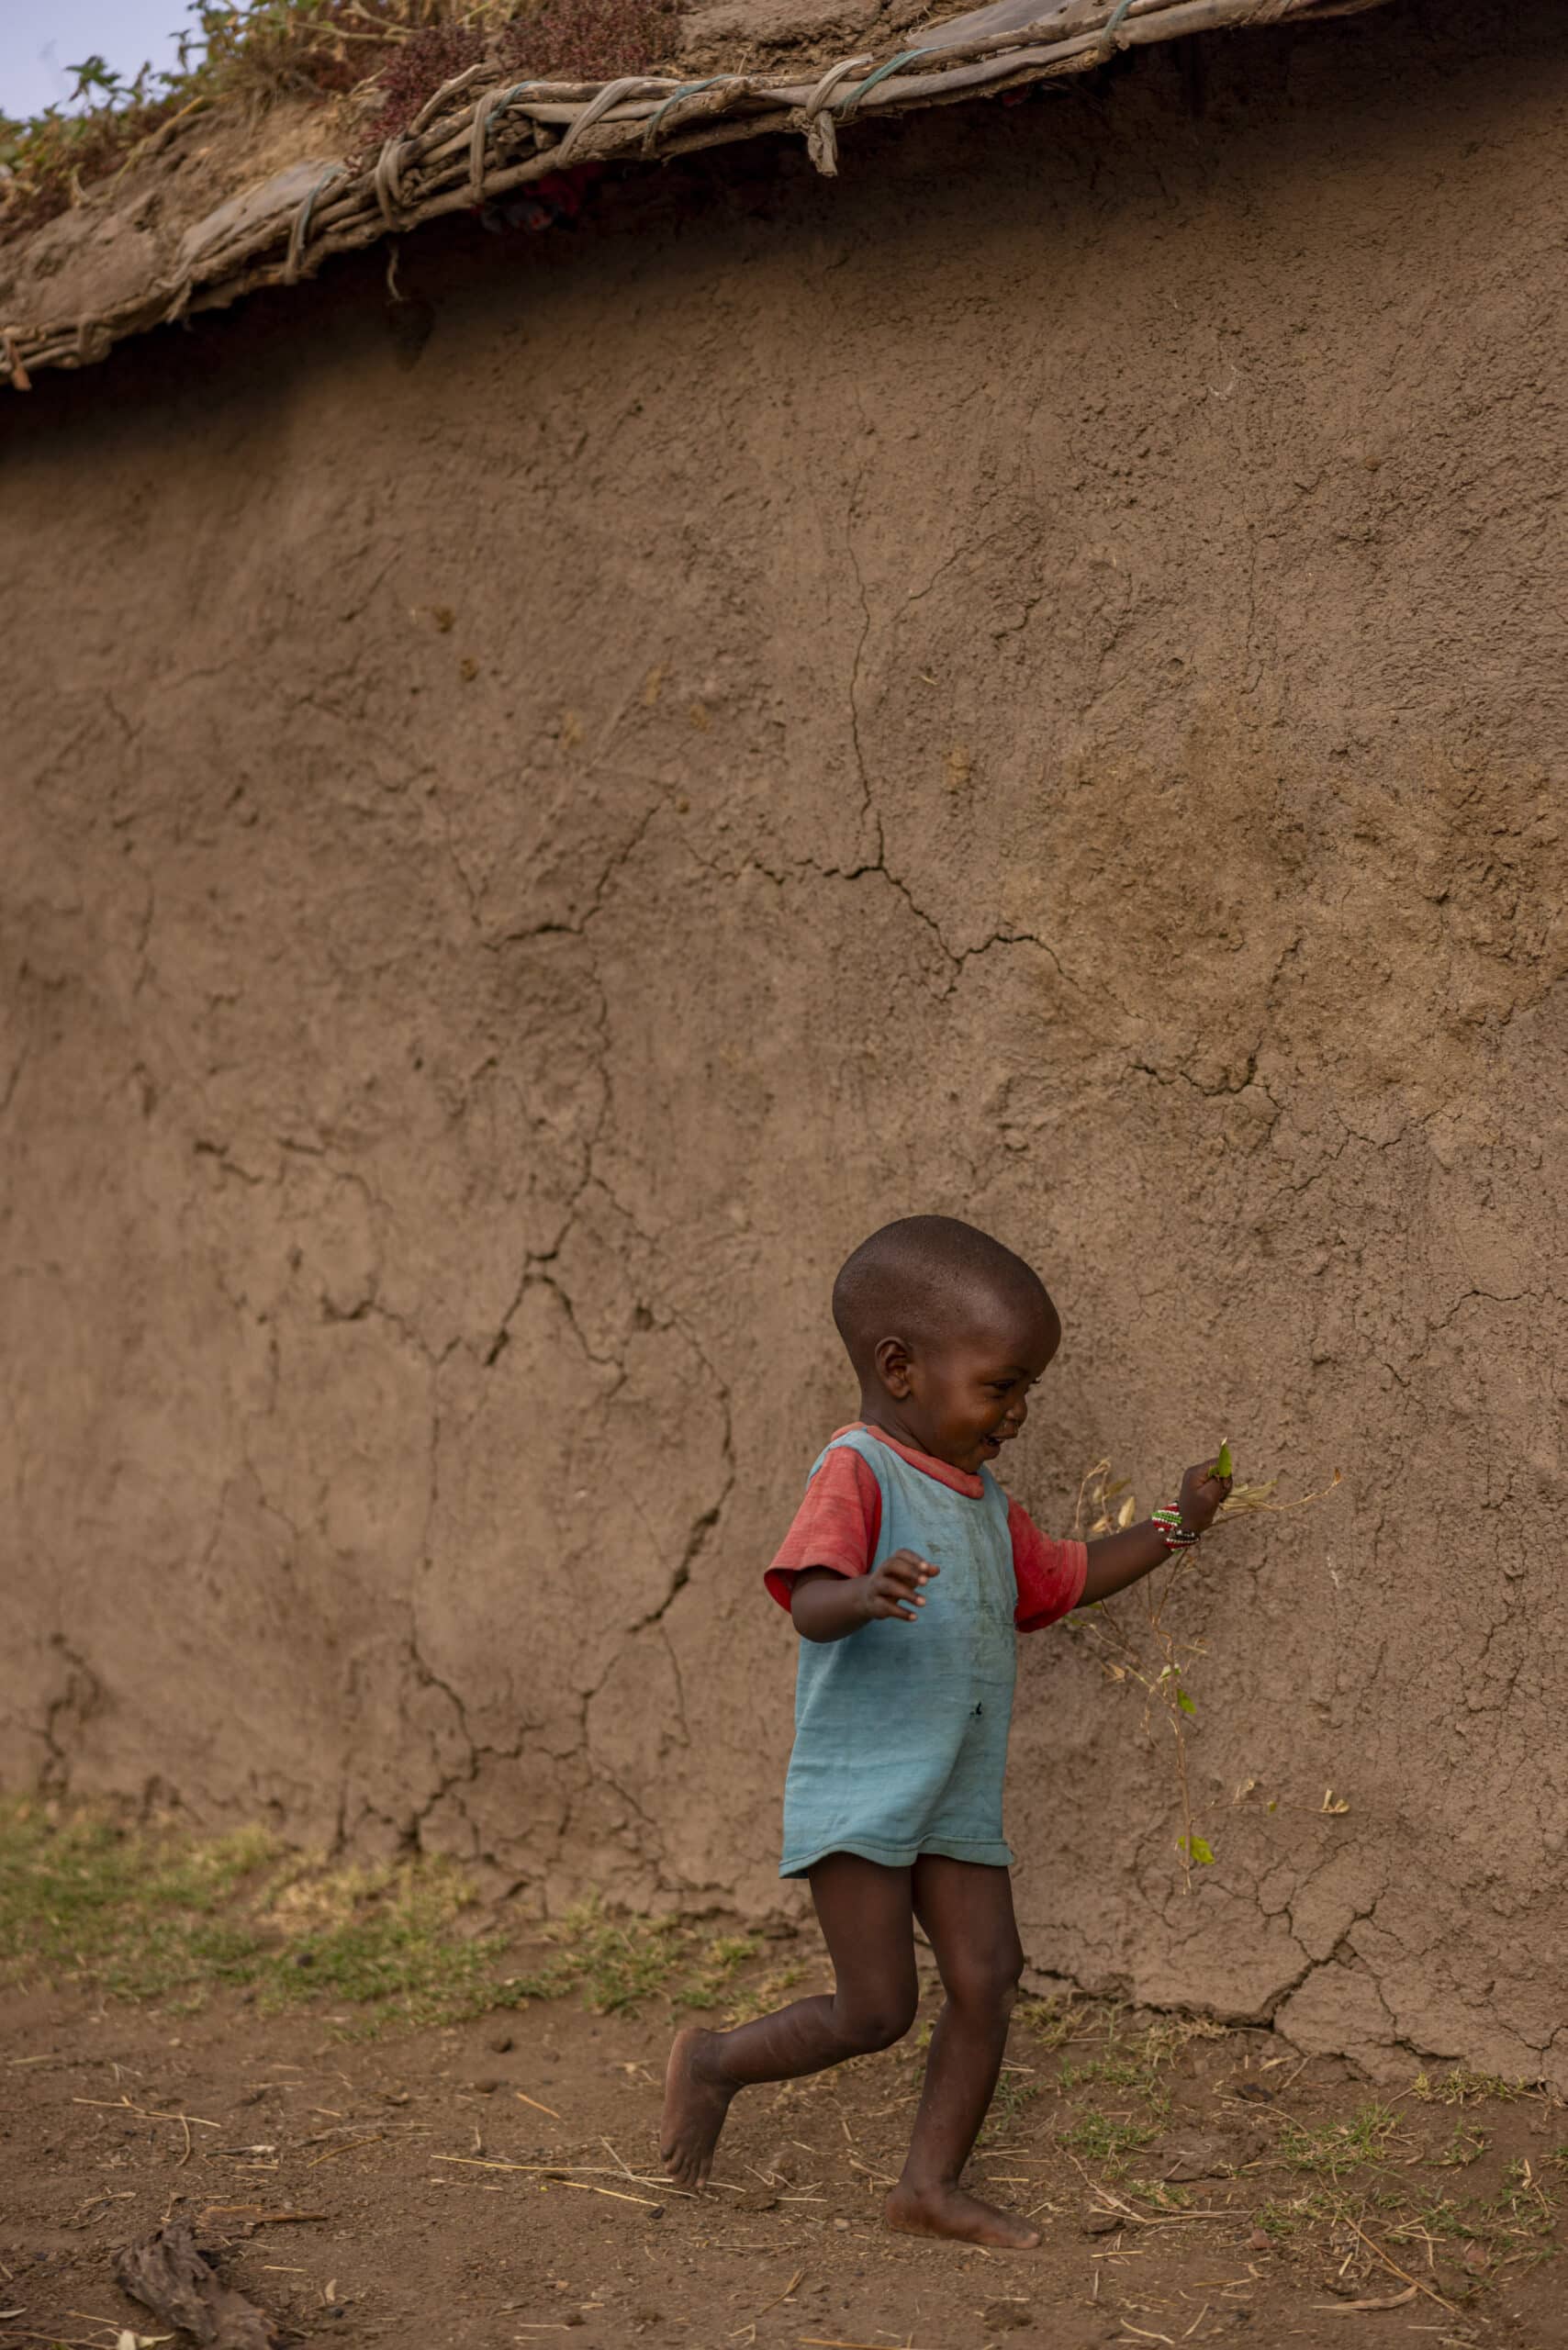 Ein kleines Kind in einem rot-blauen Outfit geht in einer ländlichen Umgebung an einer großen Lehmmauer mit Strohdach vorbei und hält einen kleinen Ast. © Fotografie Tomas Rodriguez